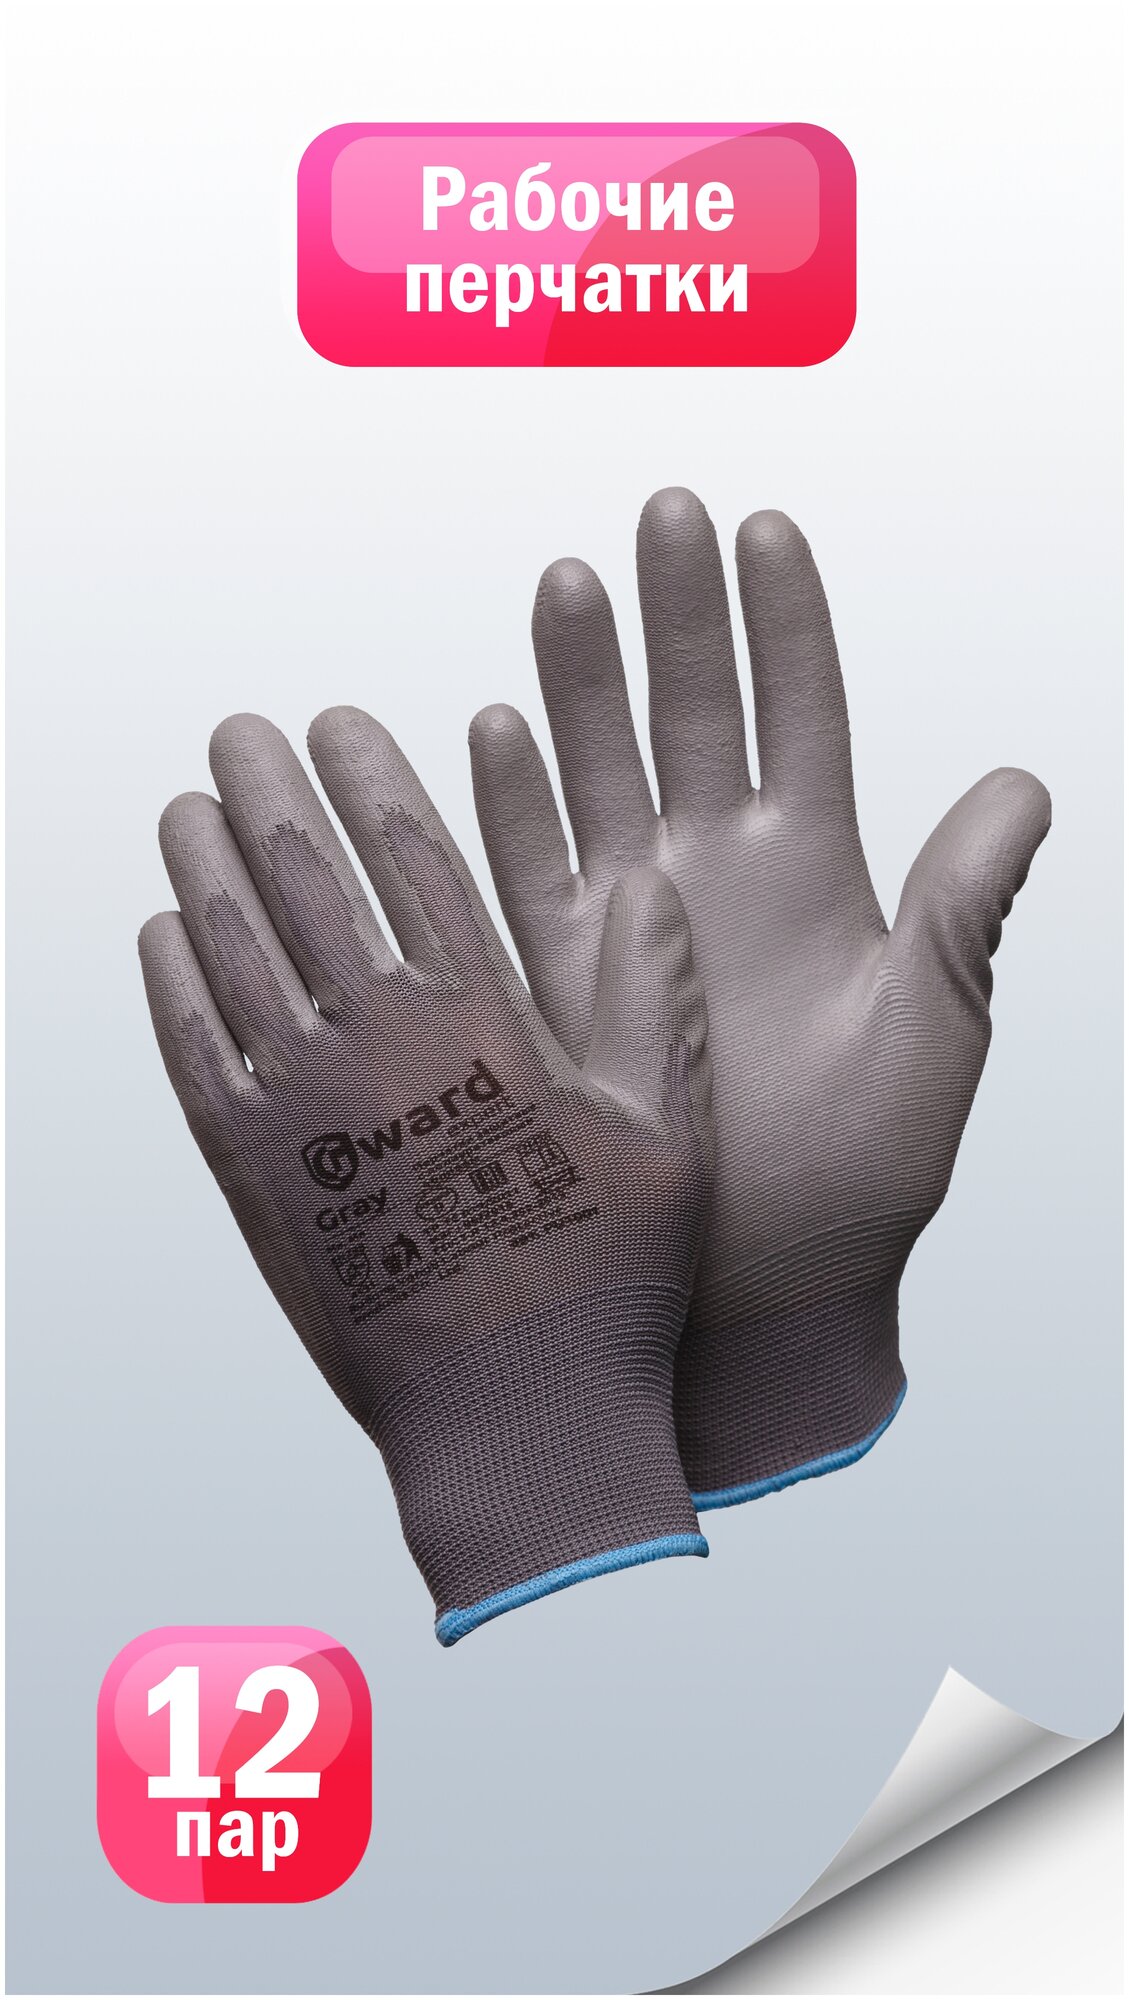 Защитные перчатки из нейлона с полиуретаном Gward Gray размер 9 пар 12